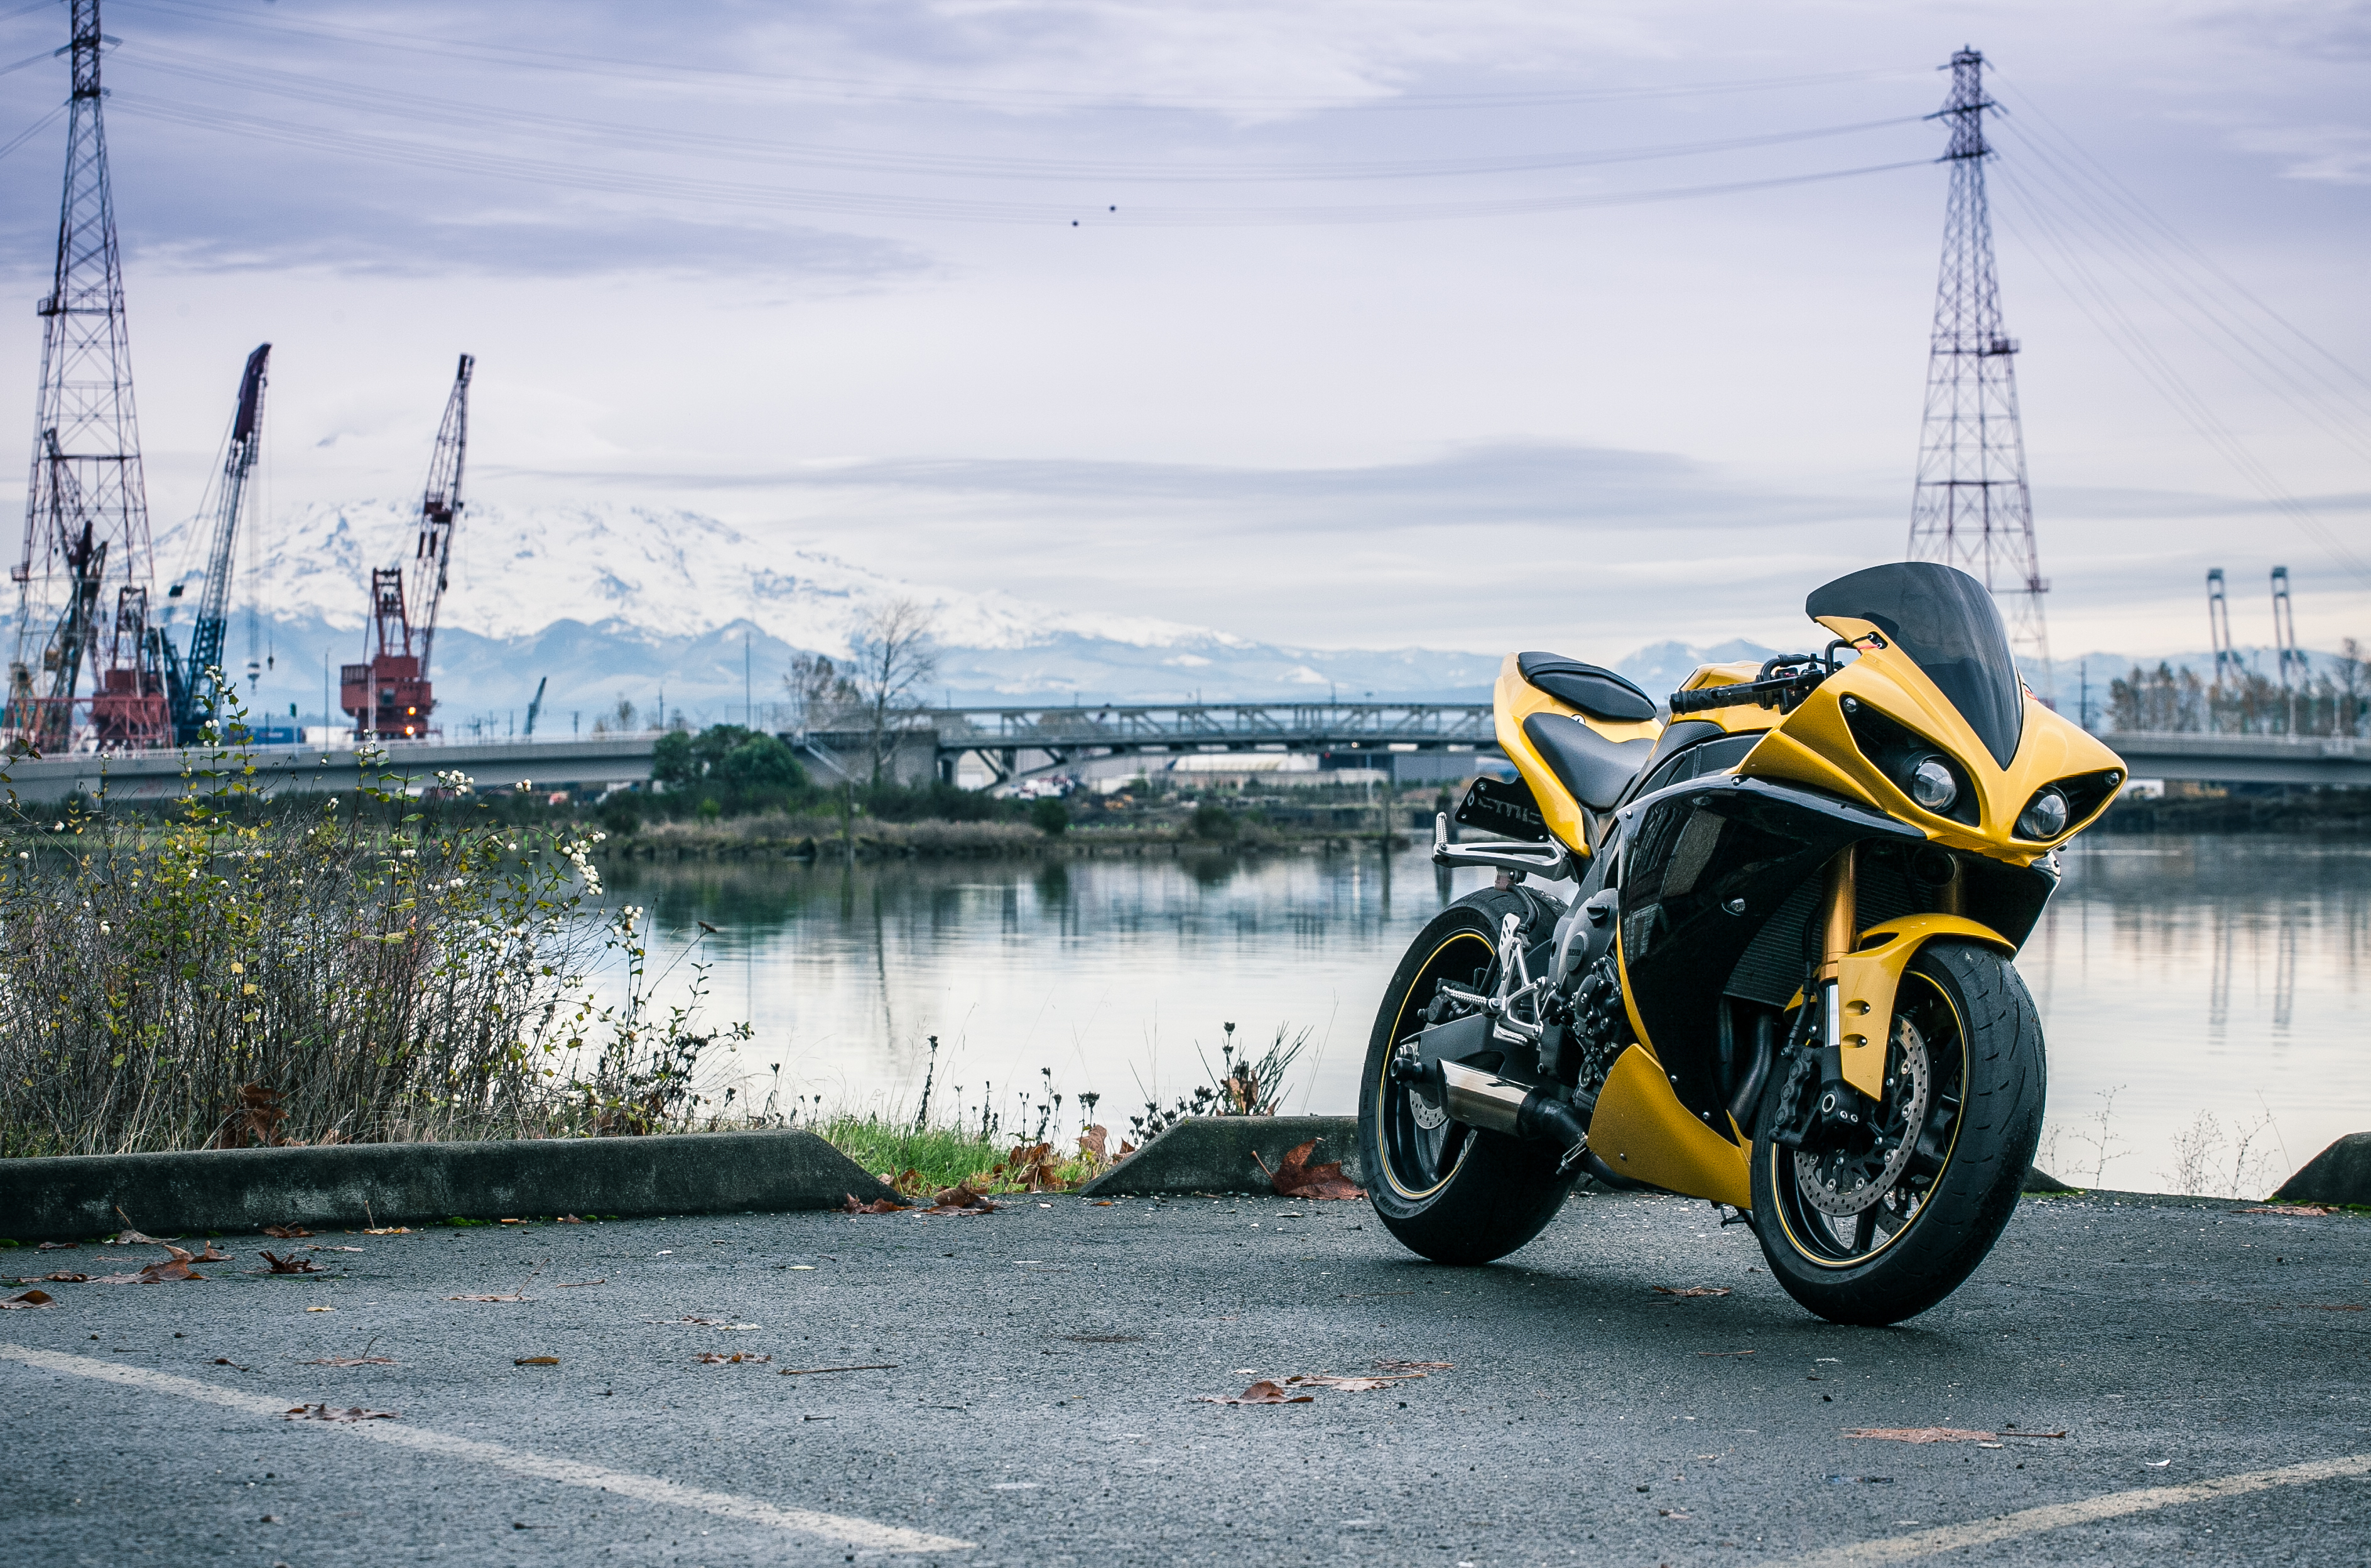 Обои на стол мотоциклы. Yamaha YZF-r1 желтый. Мотоцикл Ямаха р1 желтый. Желтый мотик Ямаха. Желтый байк Ямаха r1.